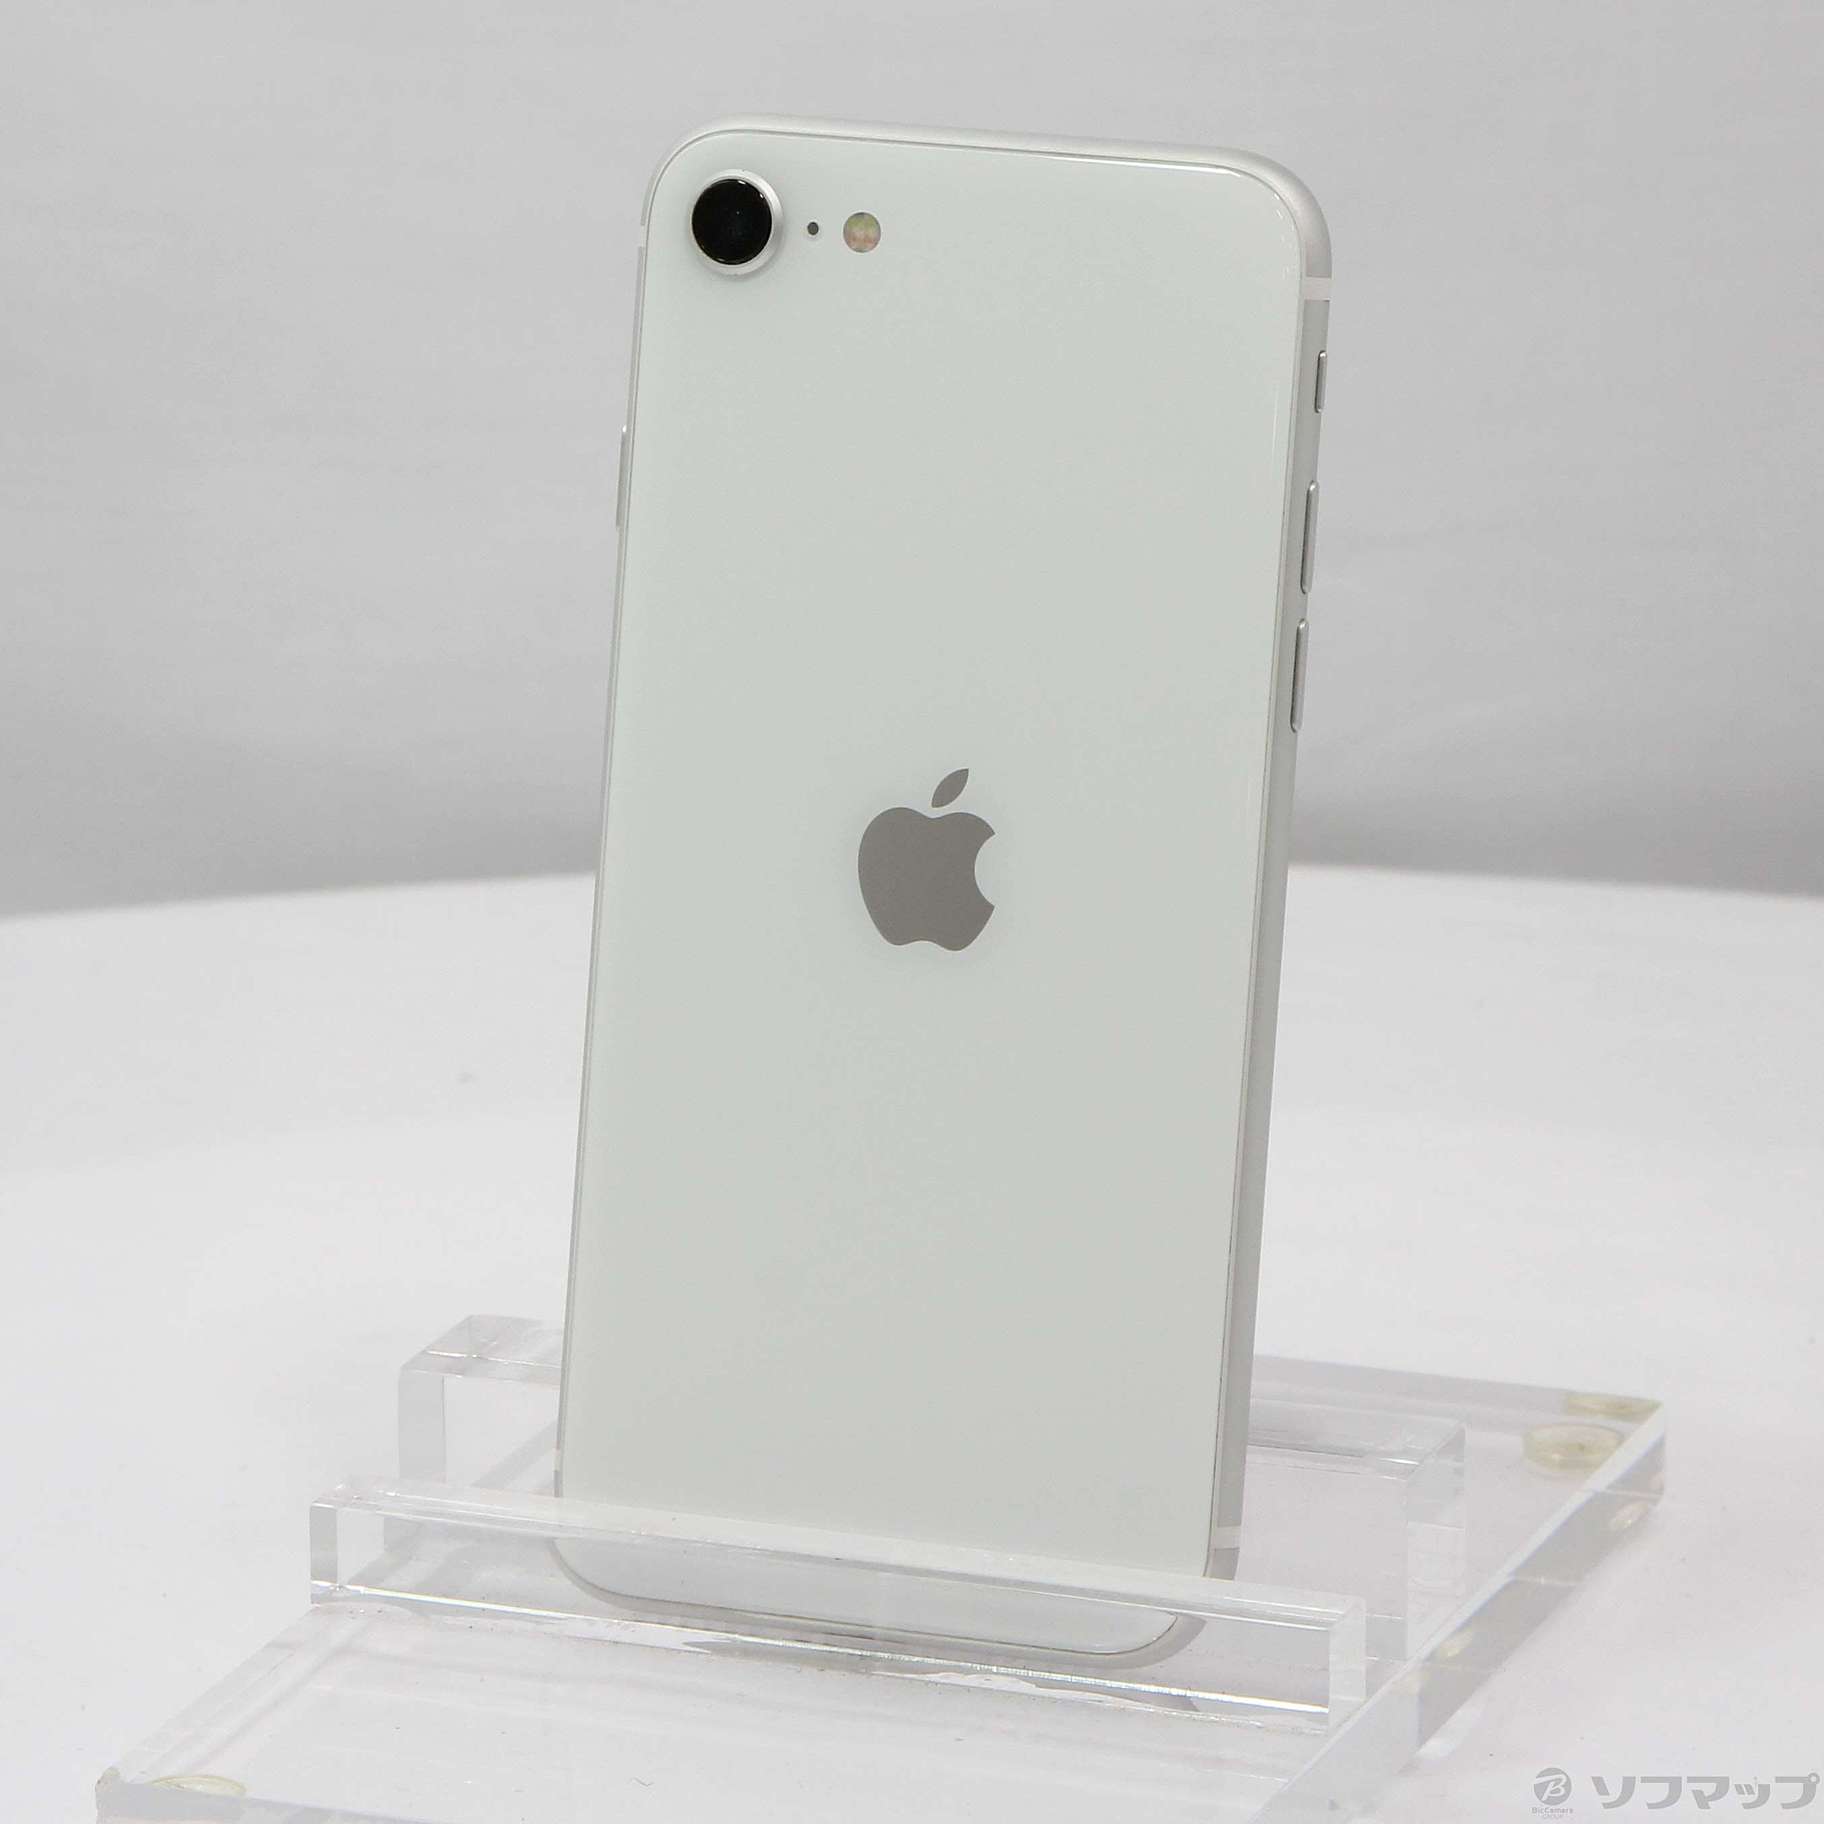 新品 iPhone SE 128GB ホワイト simフリー